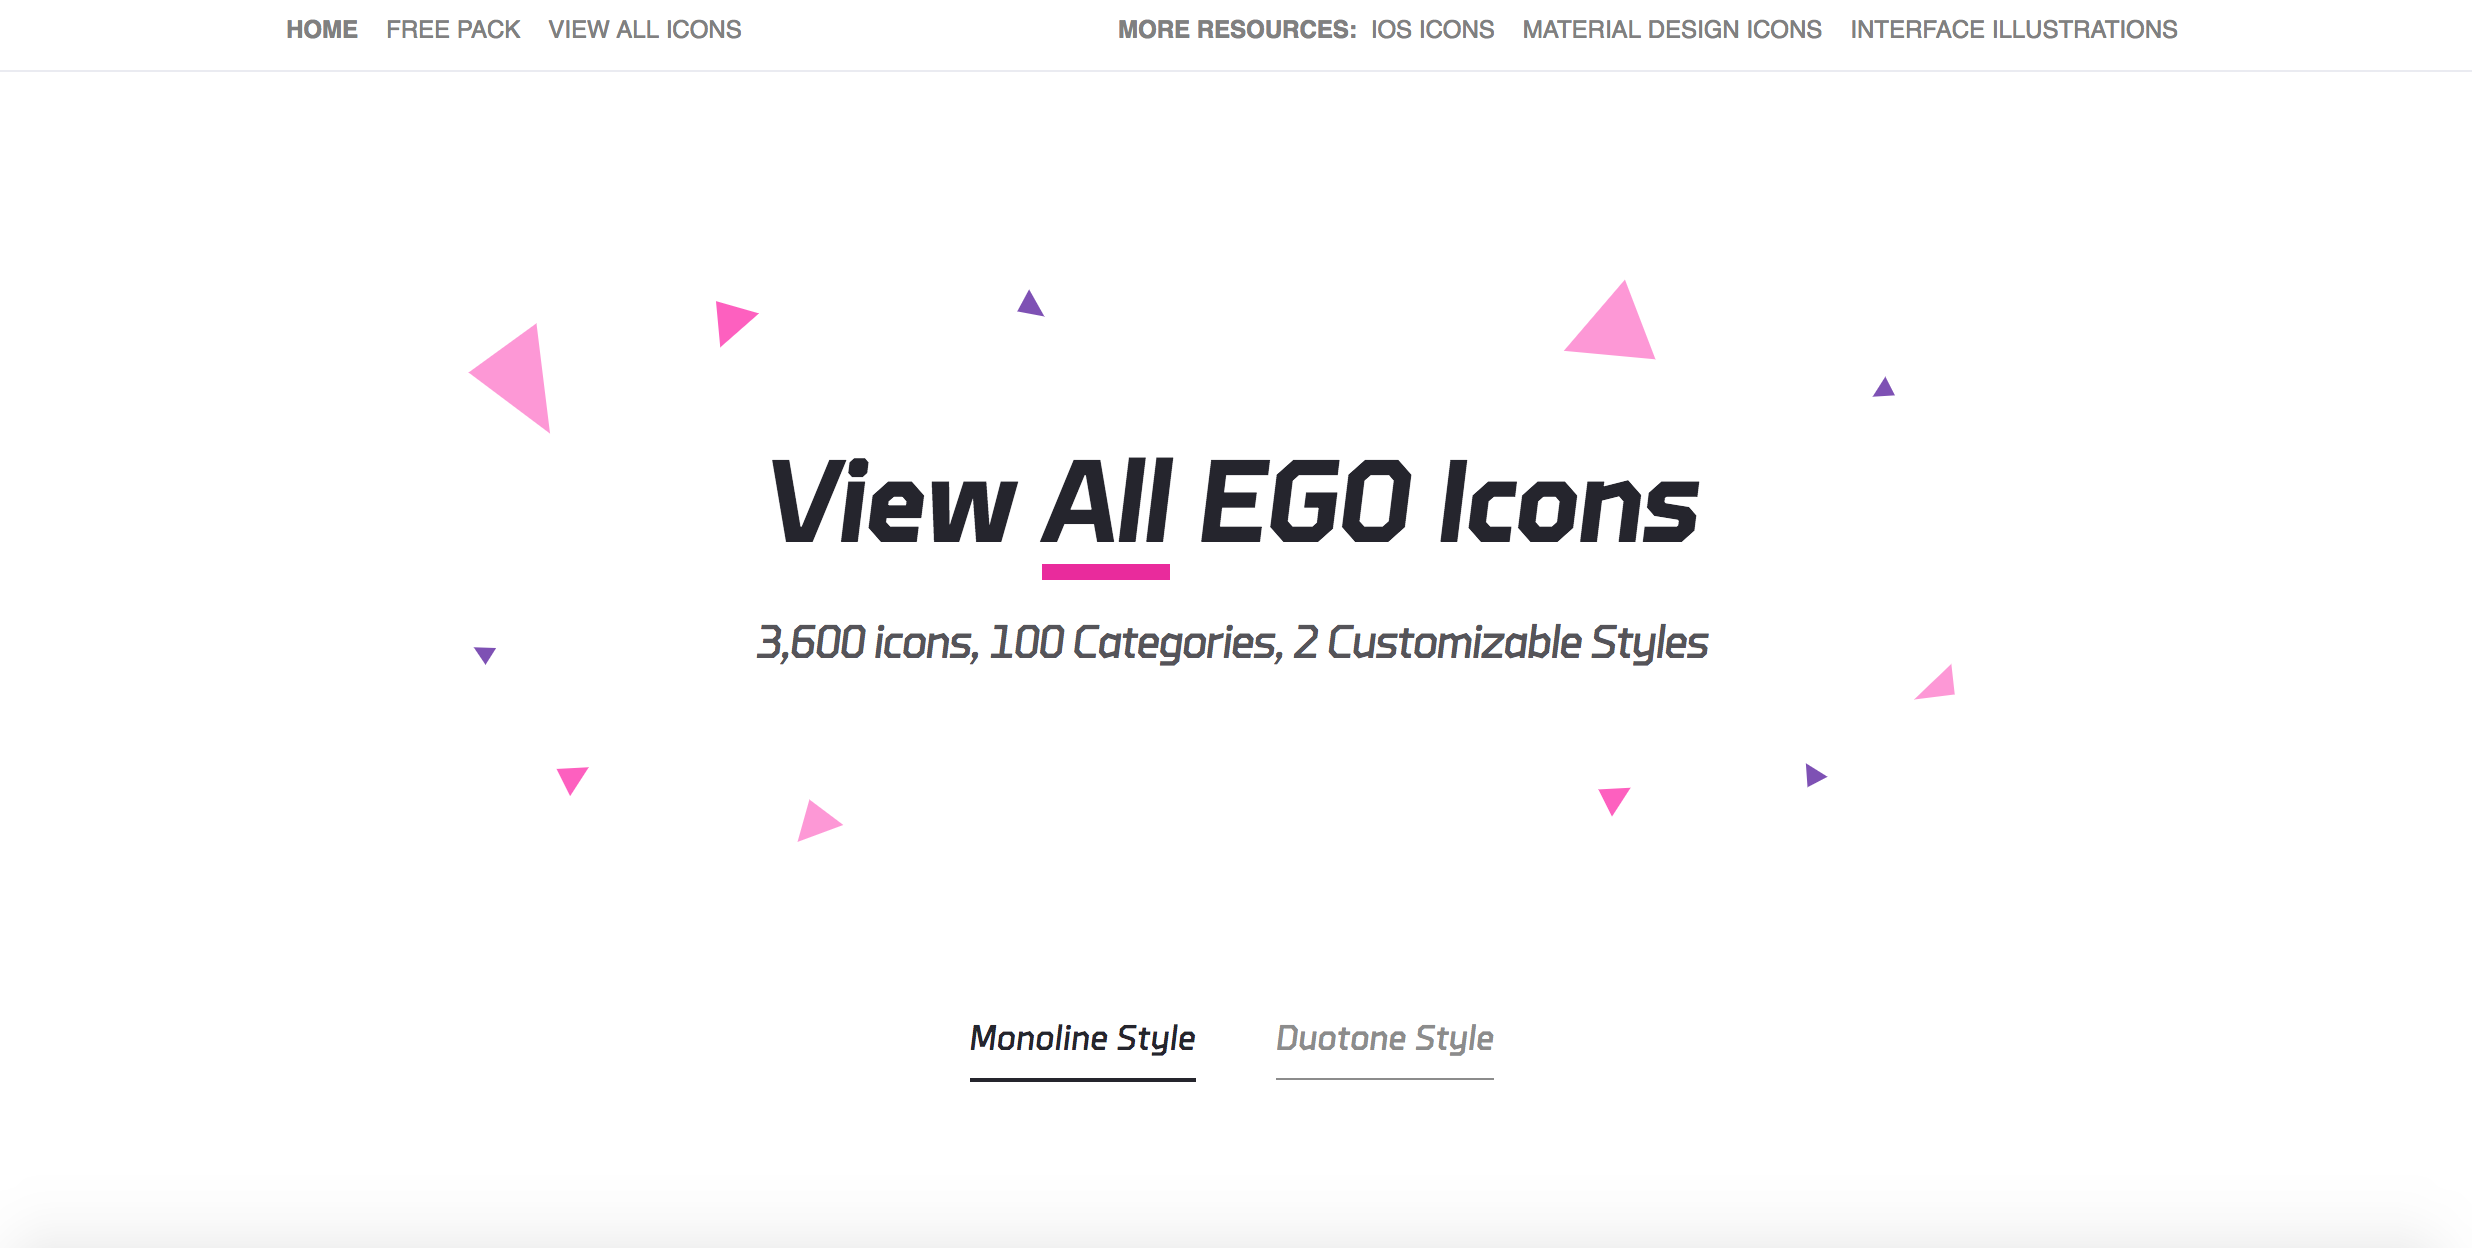 Ego icons presentation icons